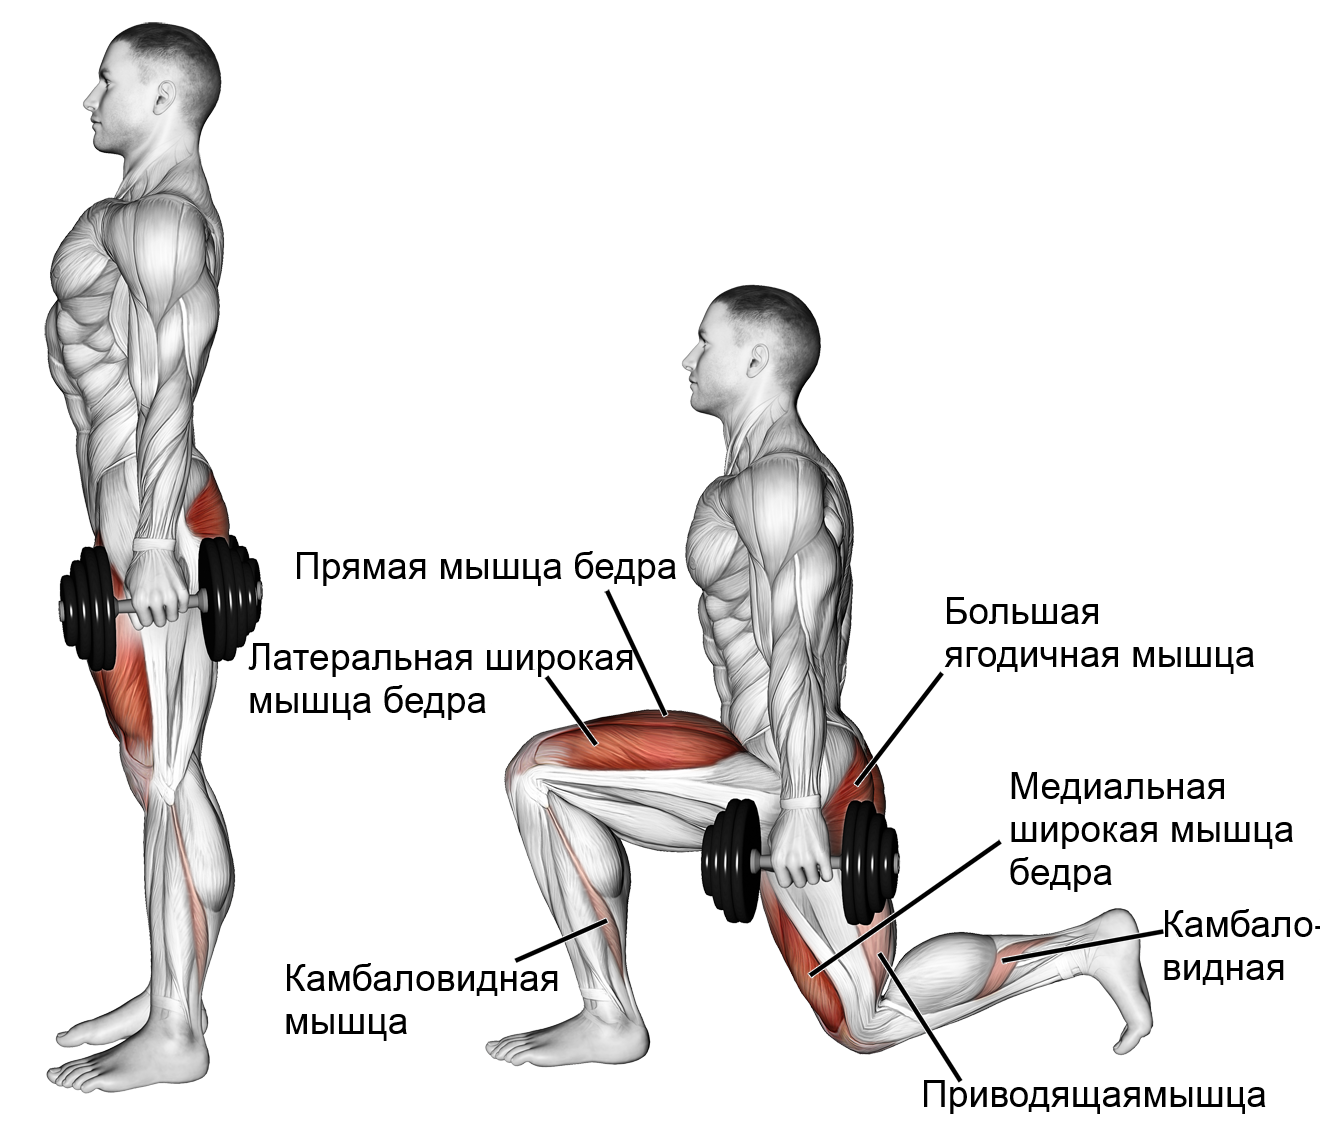 Упражнения для ног с гантелями для мужчин. Тренировки выпады упражнения схема. Выпады с гантелями для мужчин техника. Выпады группы мышц. Упражнения на ноги и ягодицы с гантелями для мужчин.